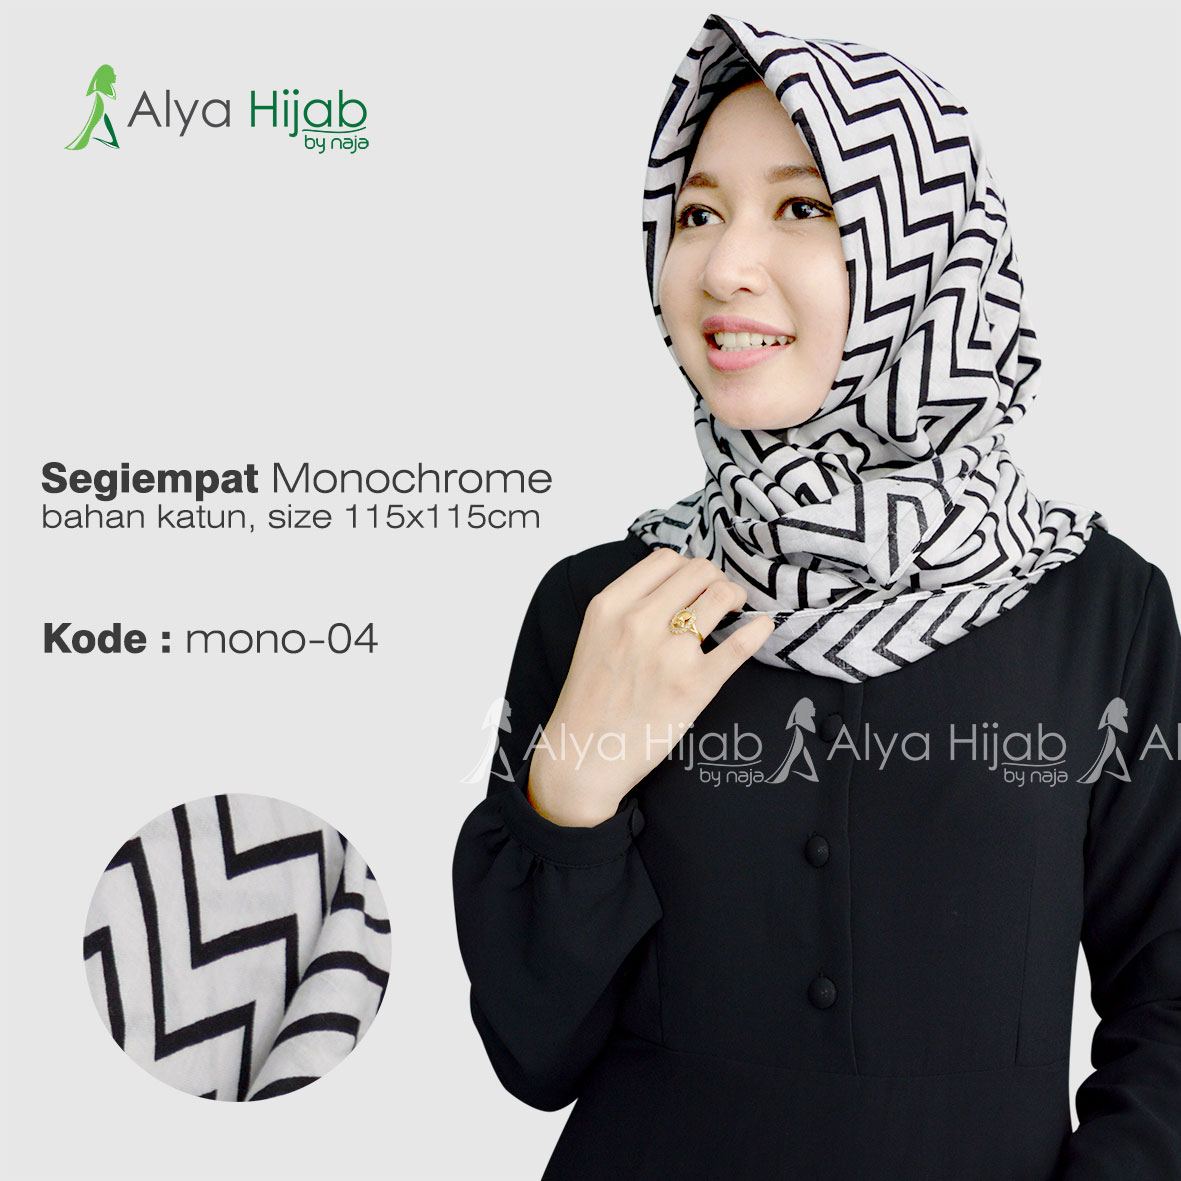 Tutorial Hijab Segi Empat Bahan Katun